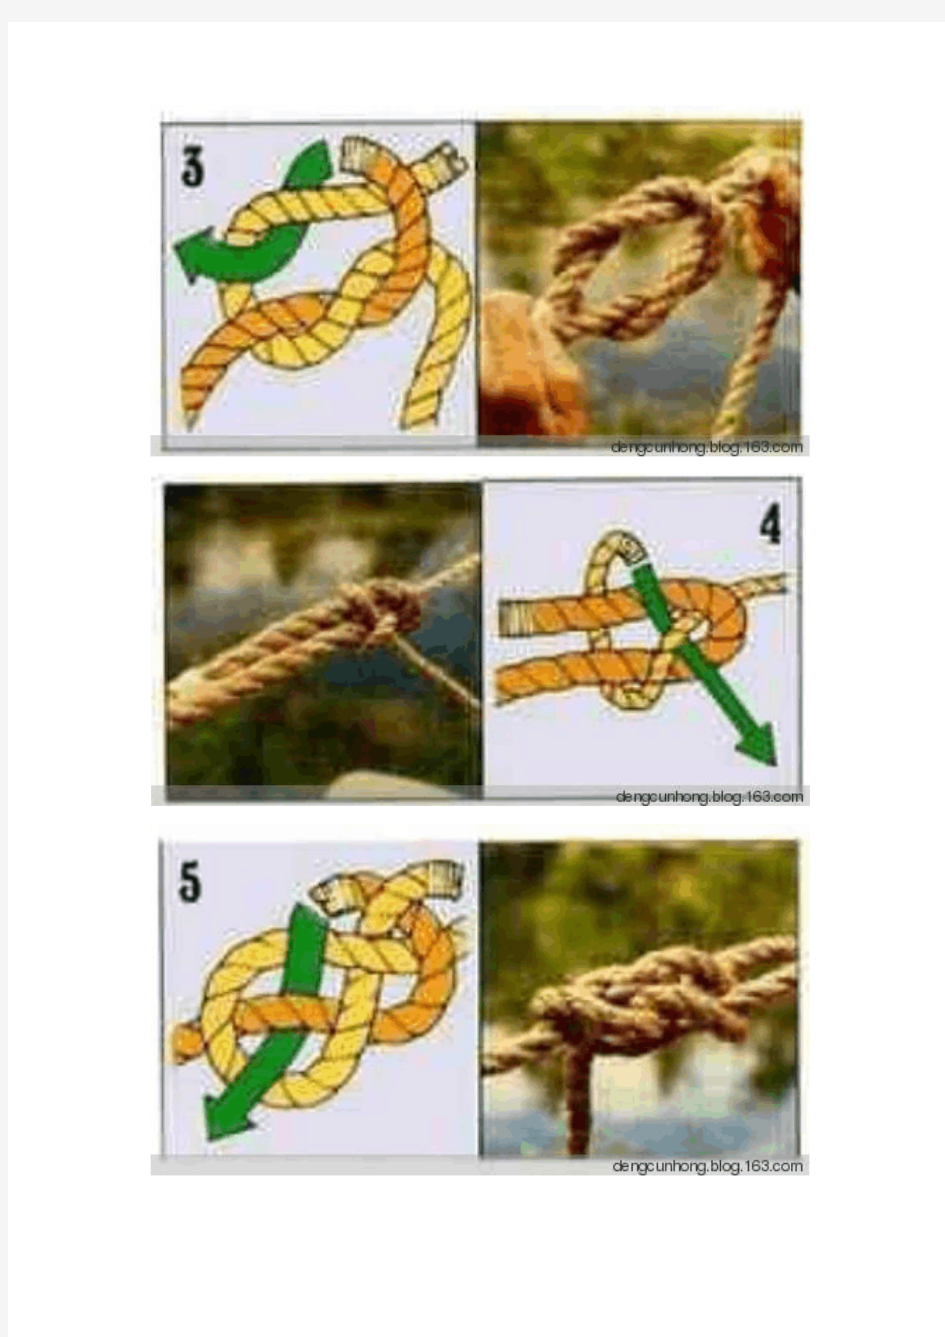 户外运动之十种常用绳结